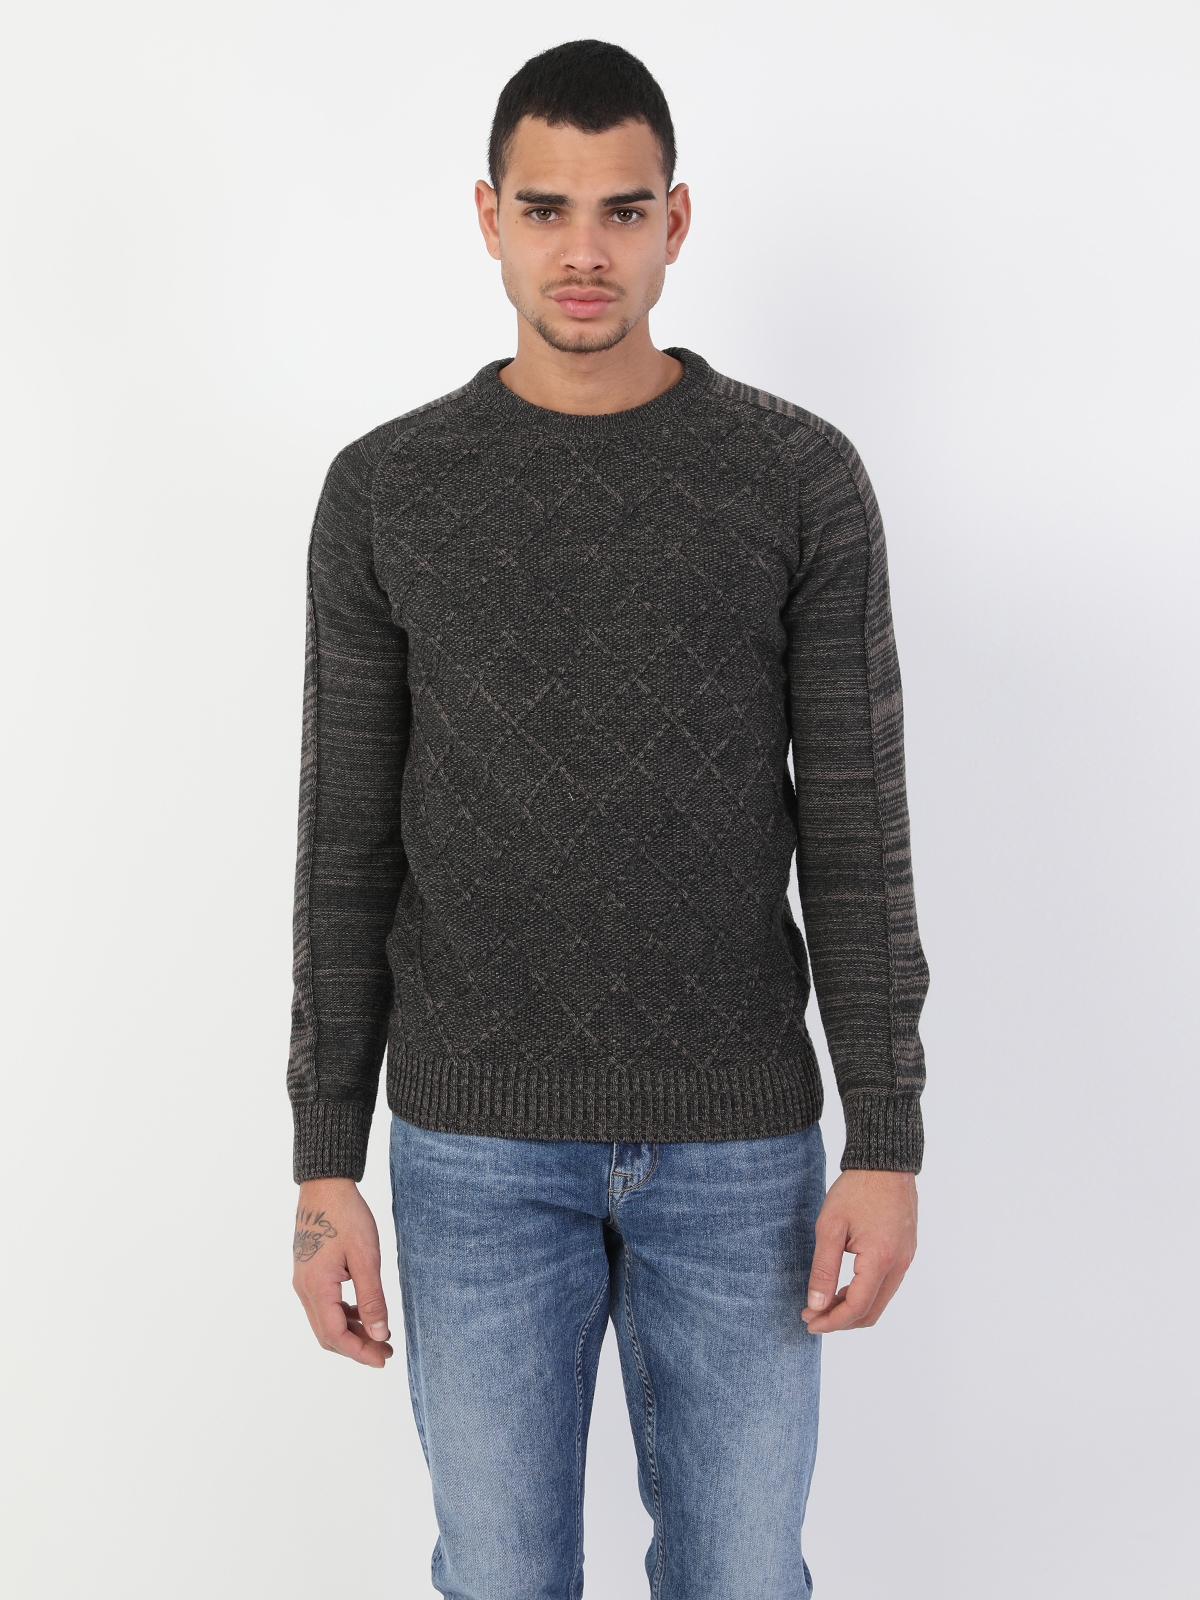 Colins Vızon Men Sweaters. 4